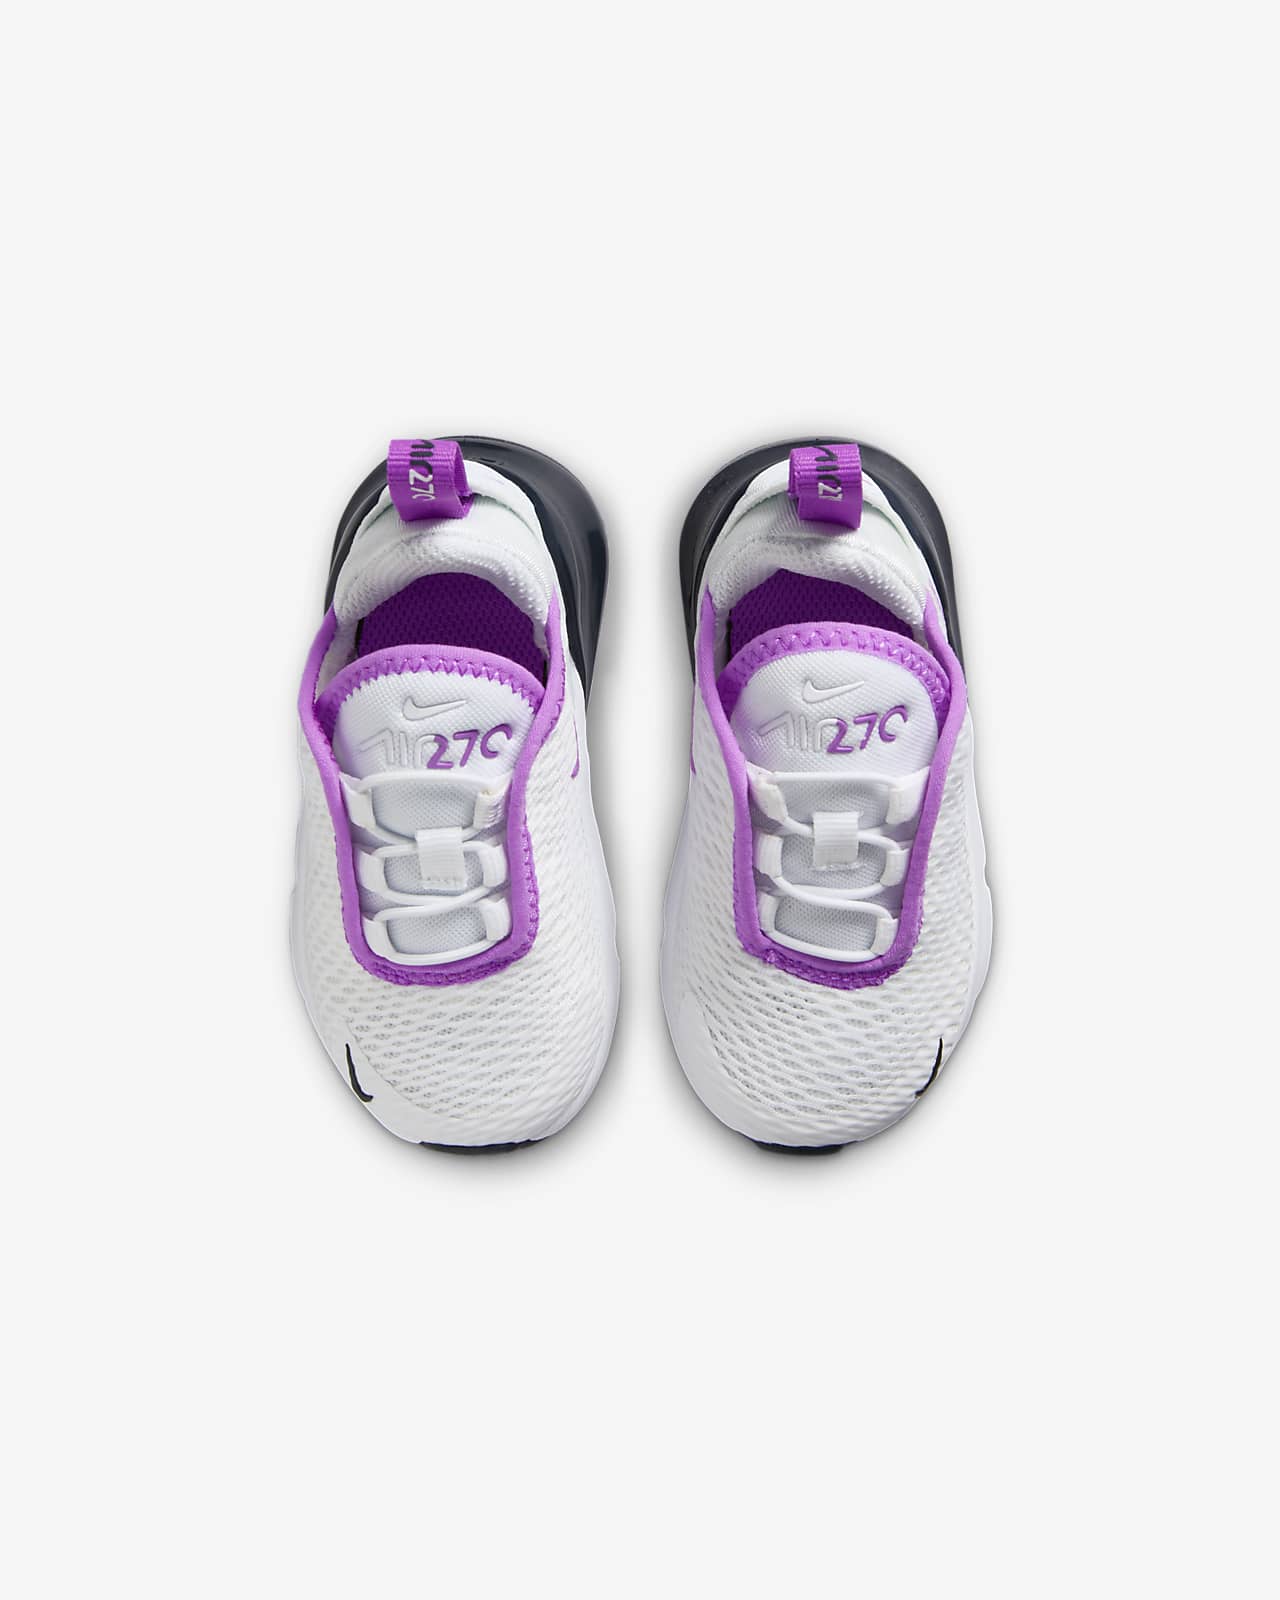 Nike Air Max 270 Baby/Toddler Shoes. Nike LU